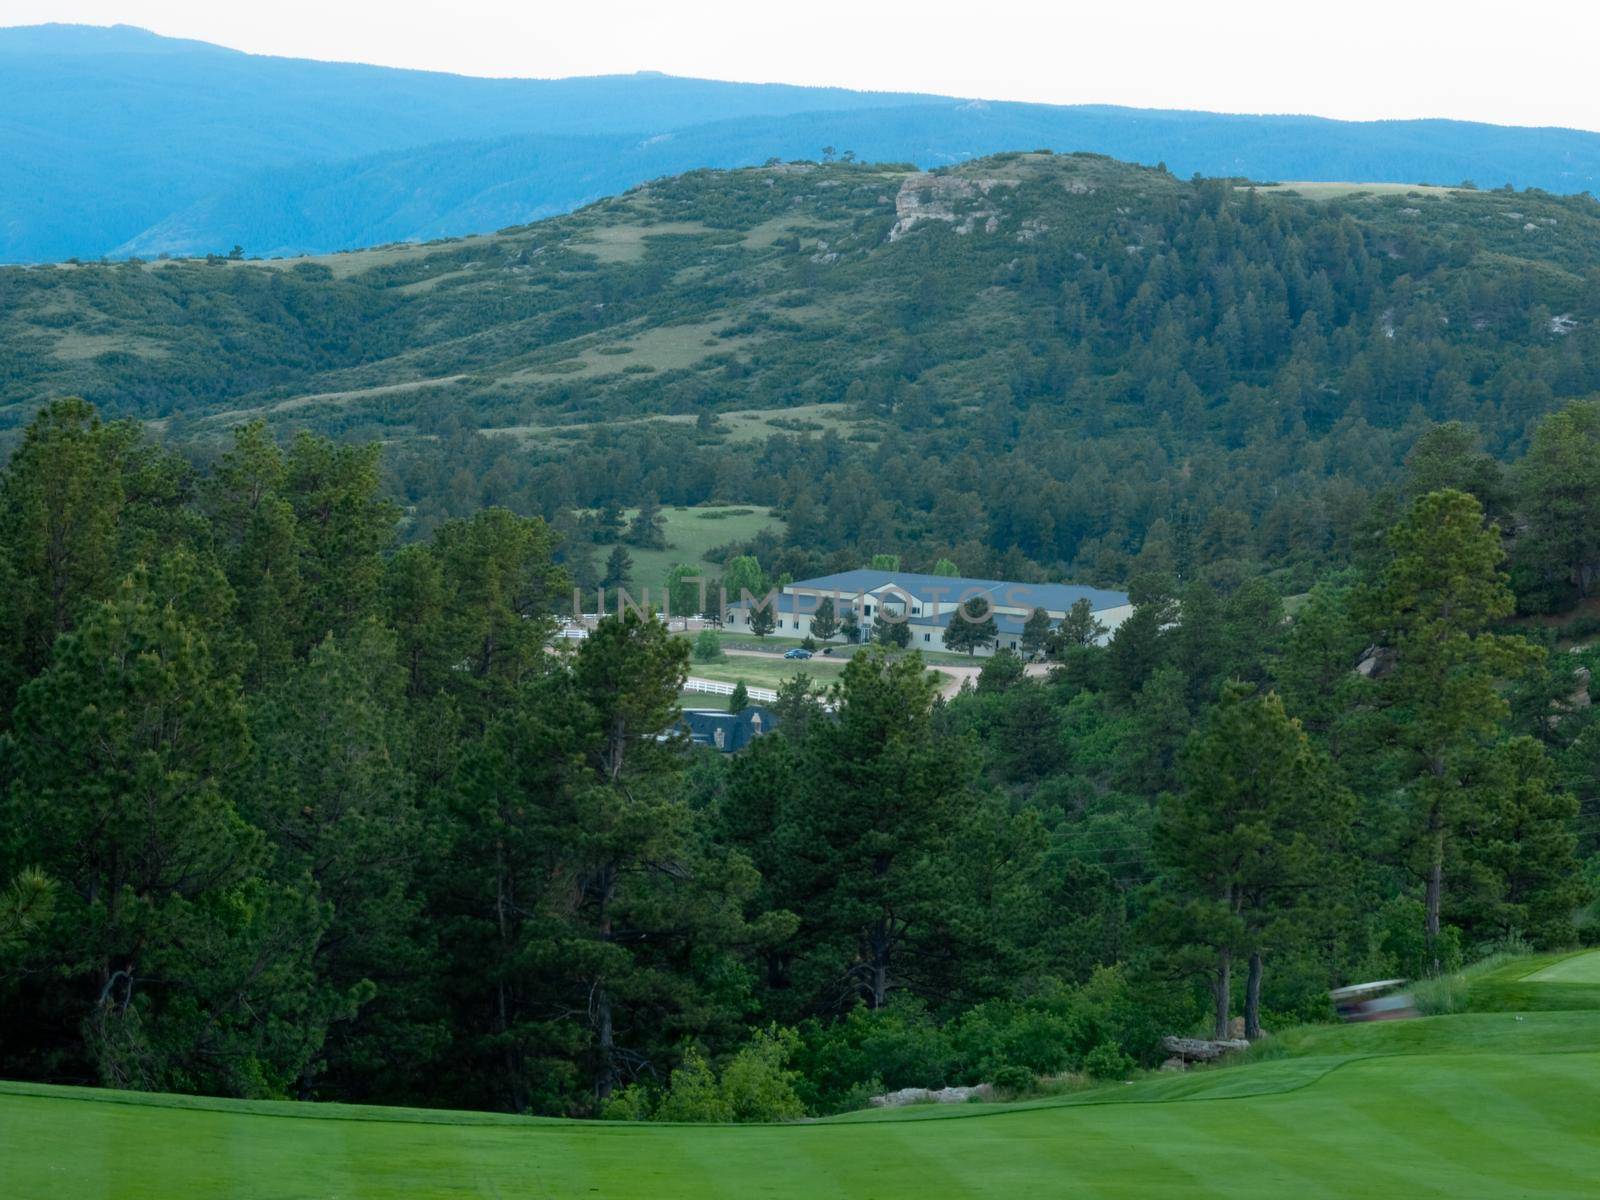 Golf course at Castle Rock, Colorado.